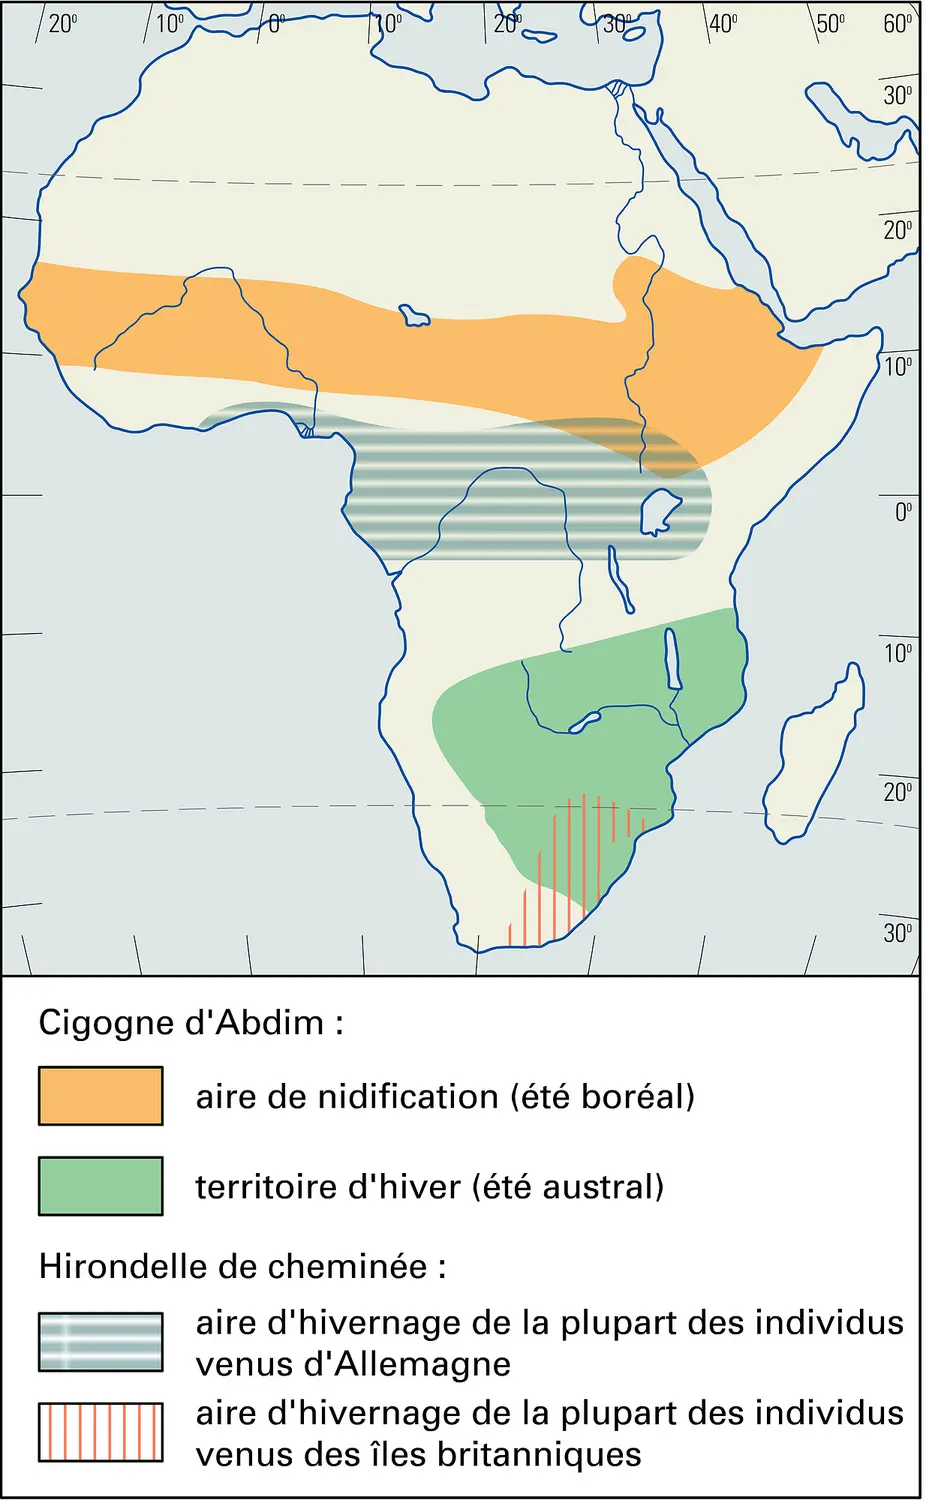 Afrique : migration de la Cigogne d'Abdim et de l'Hirondelle de cheminée